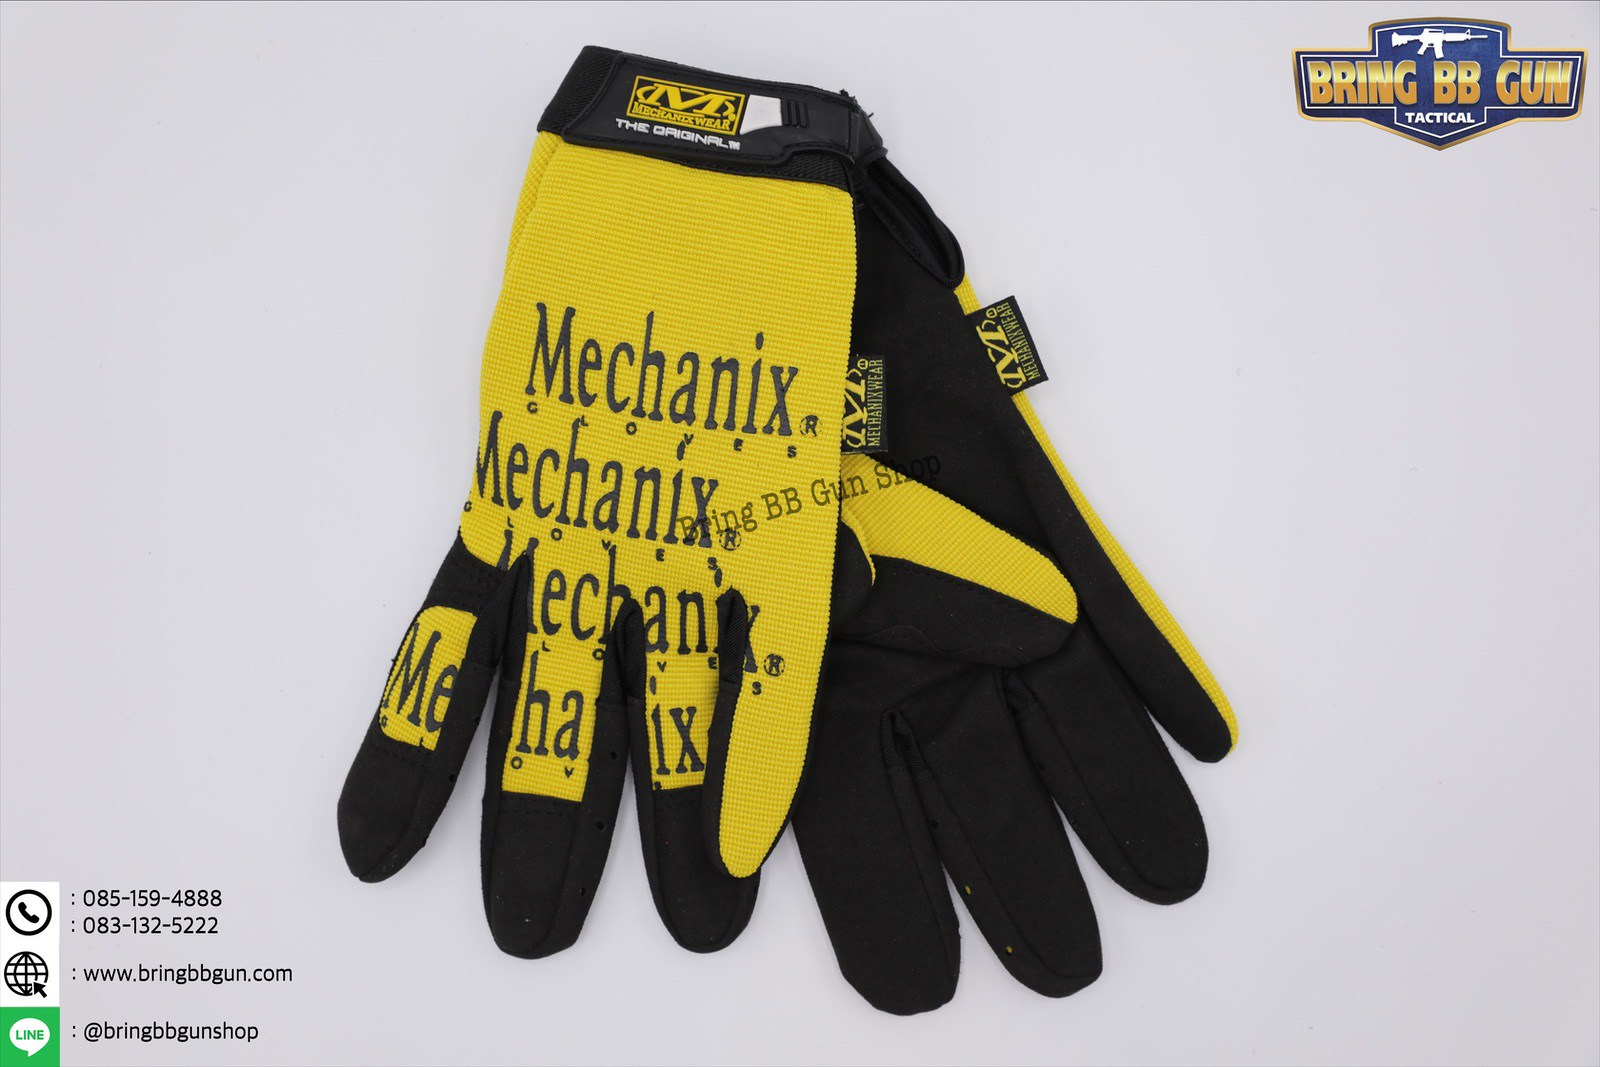 ถุงมือเต็มนิ้ว ยี่ห้อ Mechanix รุ่น Original  มี6สีให้เลือก #สีดำโลโกขาว #สีดำโลโก้ดำ #สีพราง #สีแดง #สีน้ำเงิน #สีเหลือง  มี3ไซค์  #ไซค์M  #ไซค์L #ไซค์XL  Size # M (รอบฝ่ามือ 20-21cm.) # L (รอบฝ่ามือ 21-22cm.) # XL (รอบฝ่ามือ 22-23cm.)  ราคาคู่ละ 380 บาท